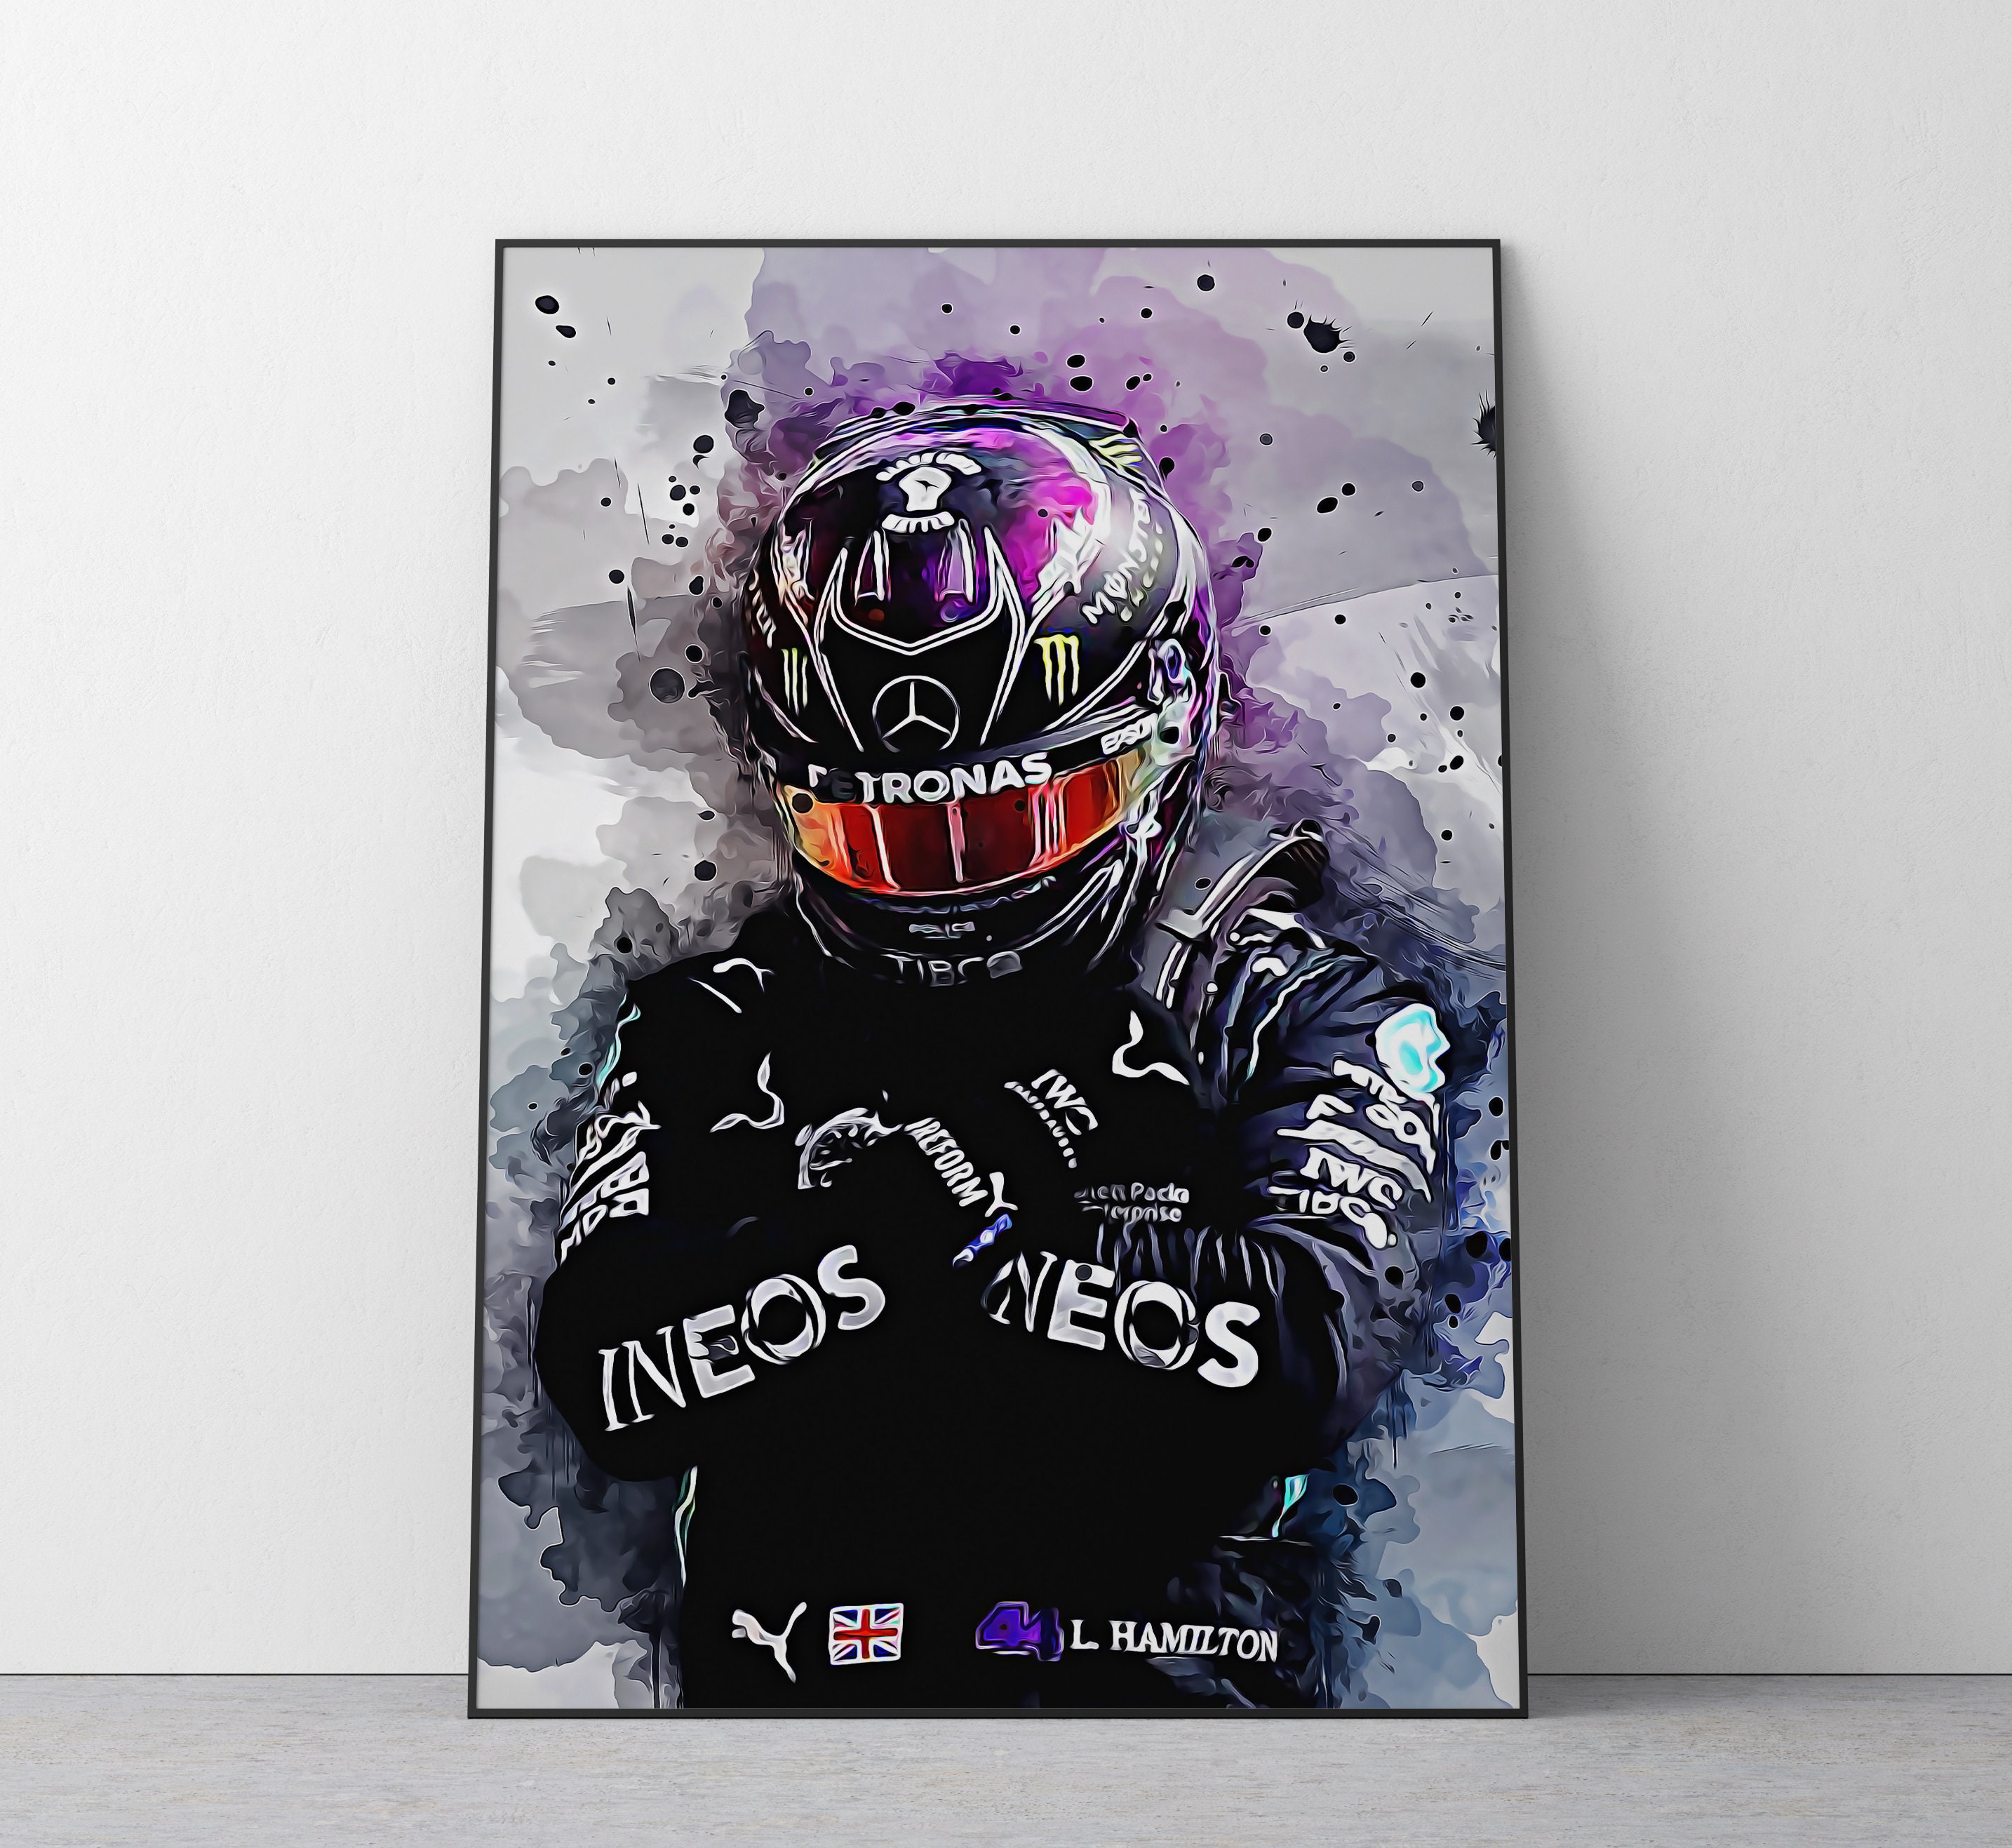 Lewis Hamilton F1 Posters Online - Shop Unique Metal Prints, Pictures,  Paintings